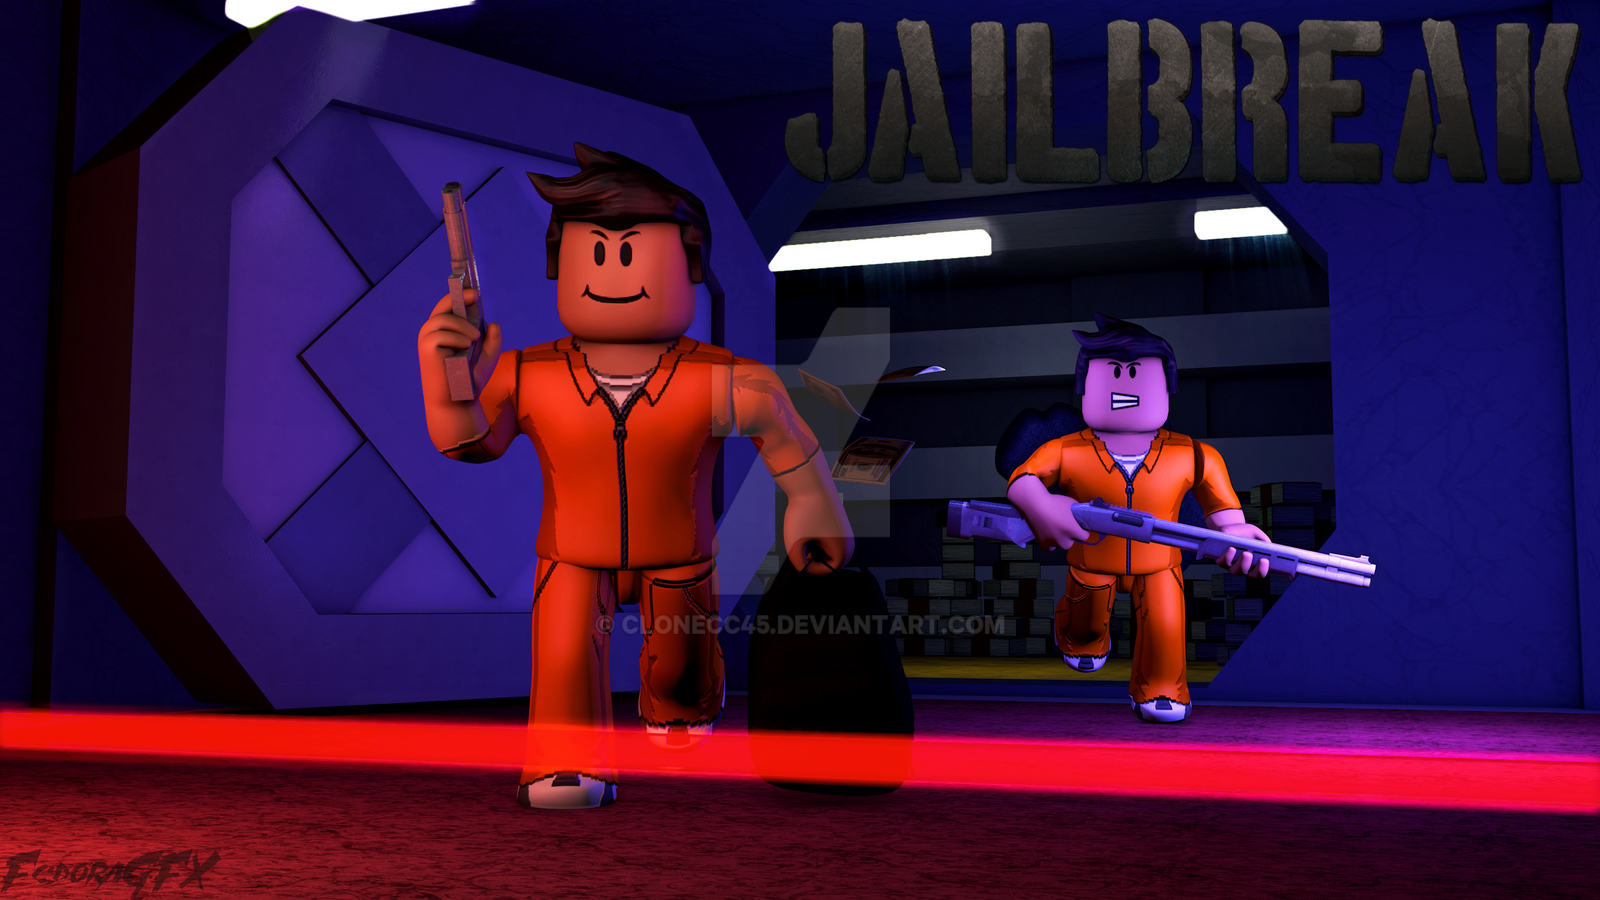 jailbreak-by-clonecc45-on-deviantart